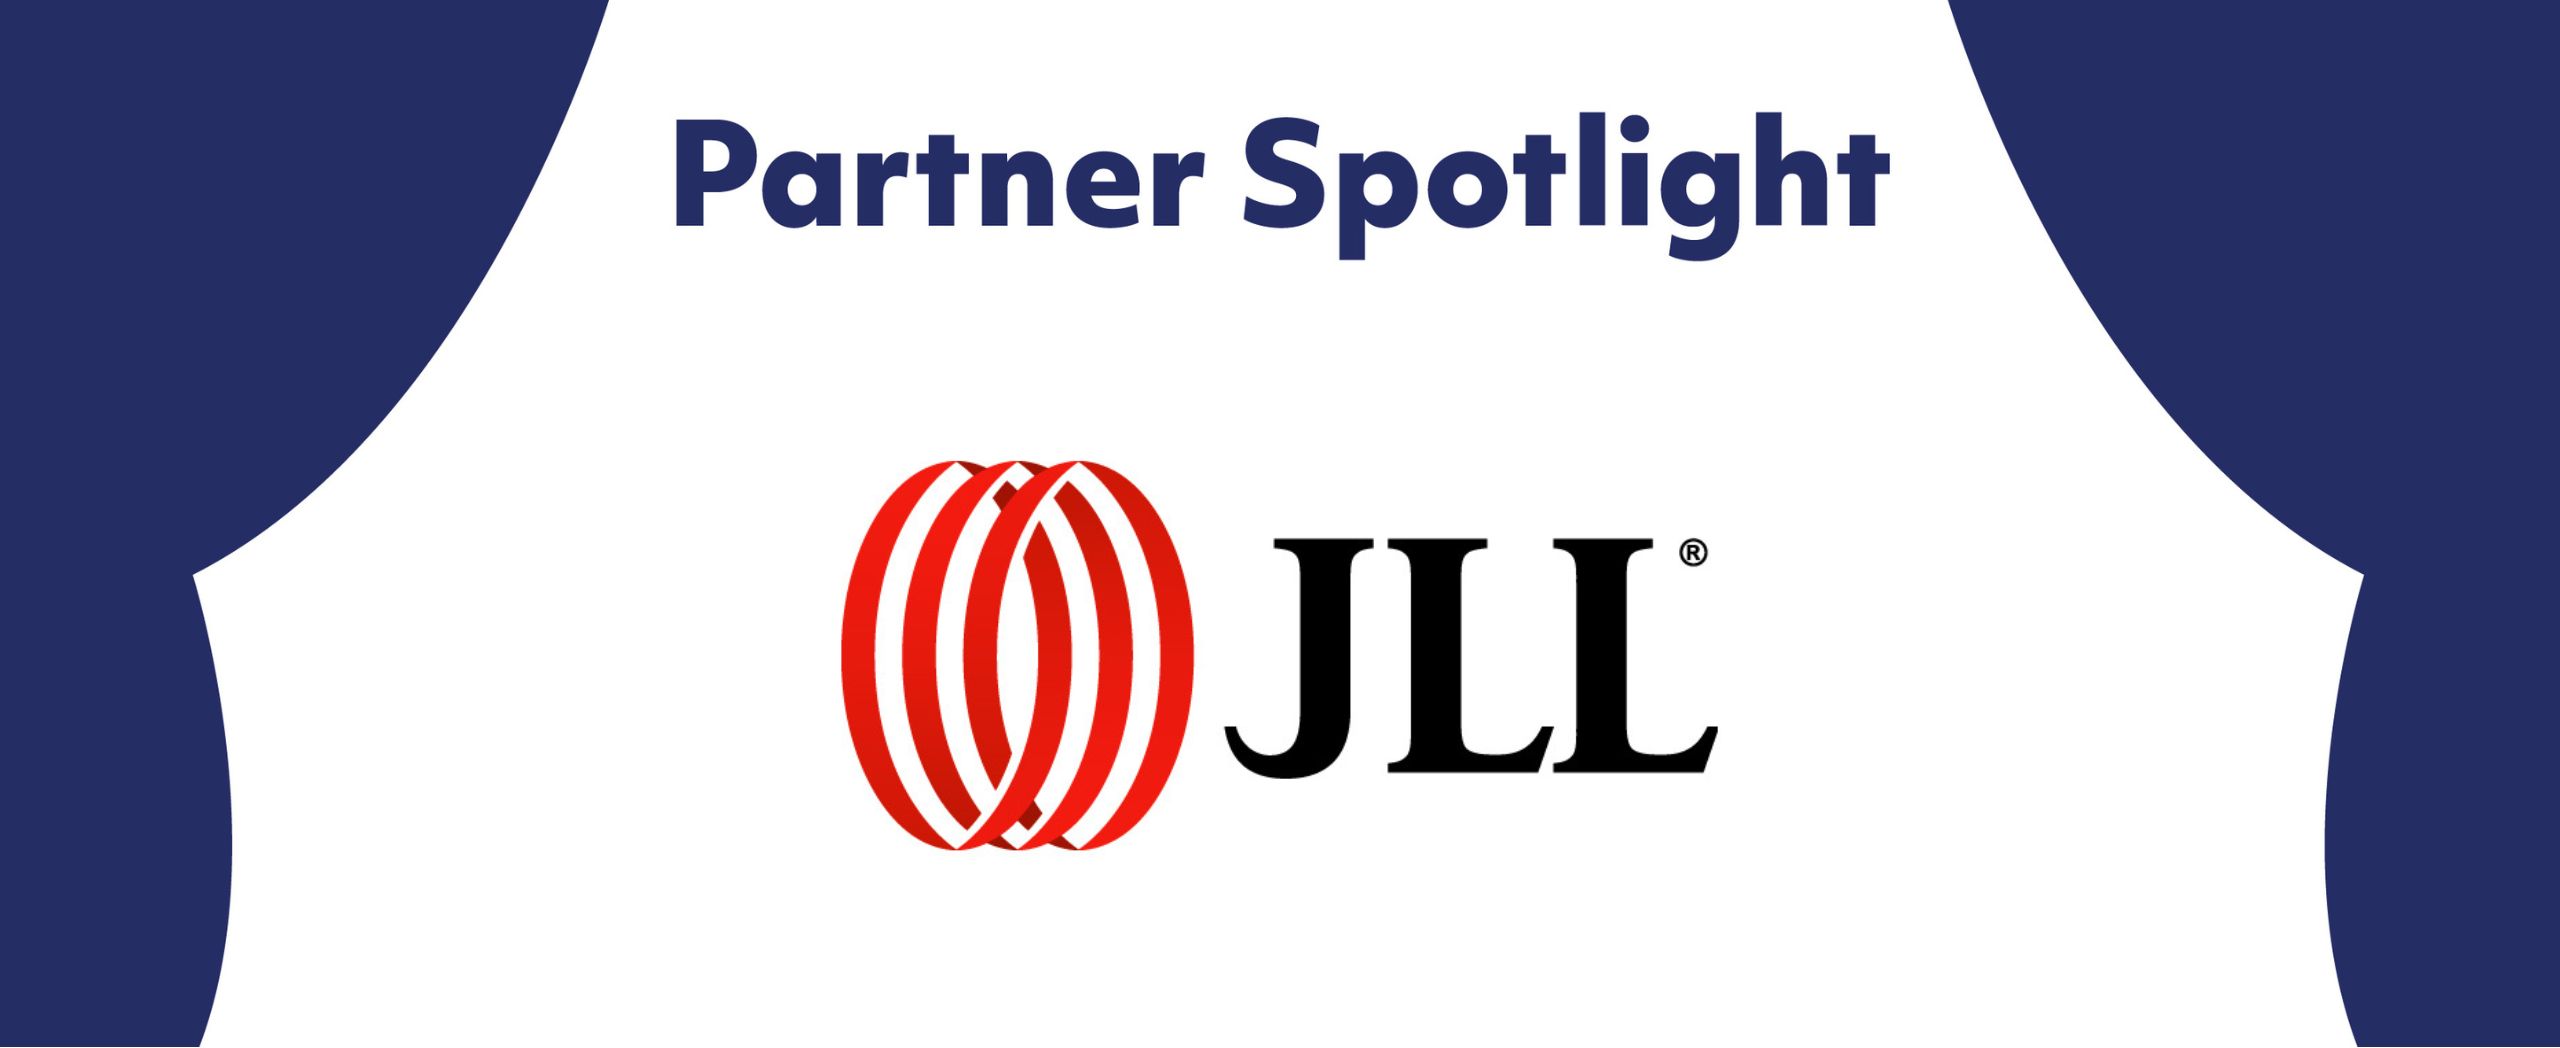 Partner Spotlight: JLL